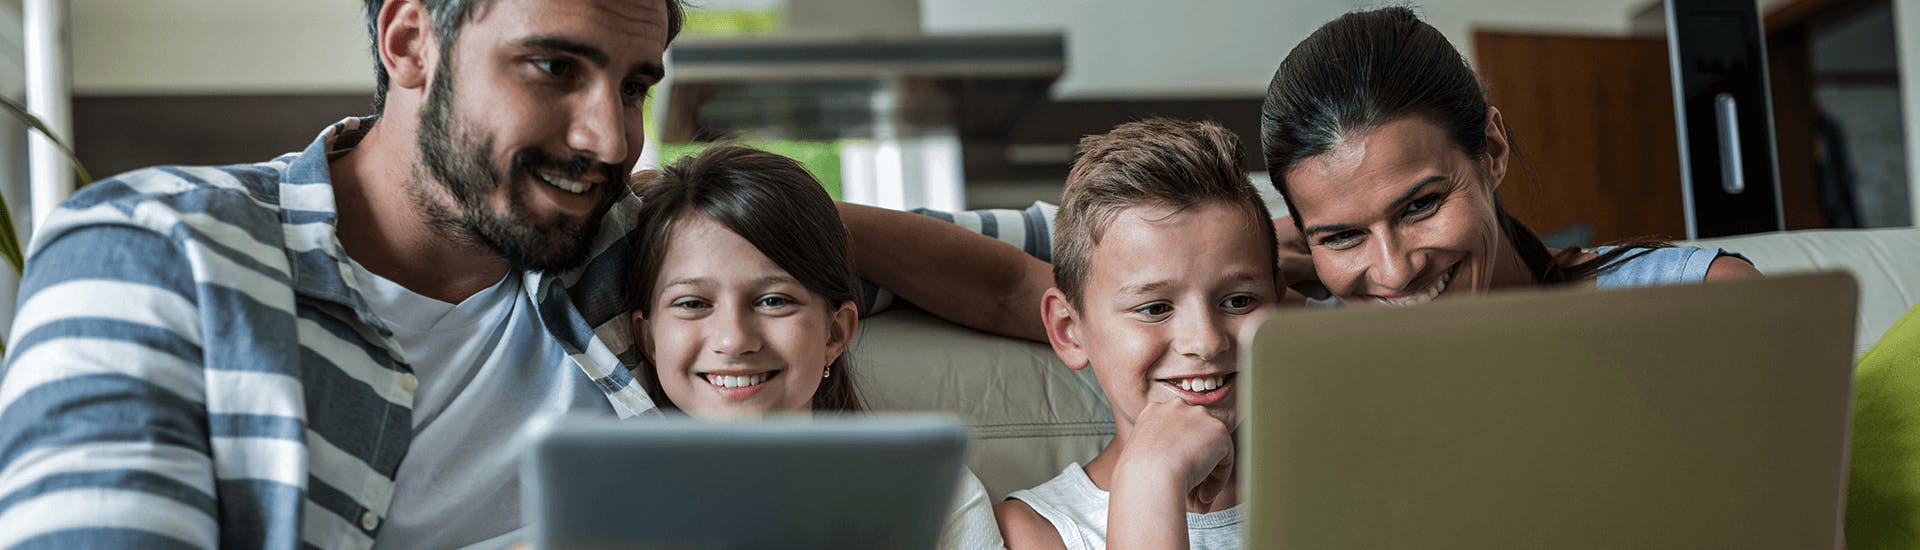 Une famille ensemble sur un canapé regarde en souriant un ordinateur portable et une tablette